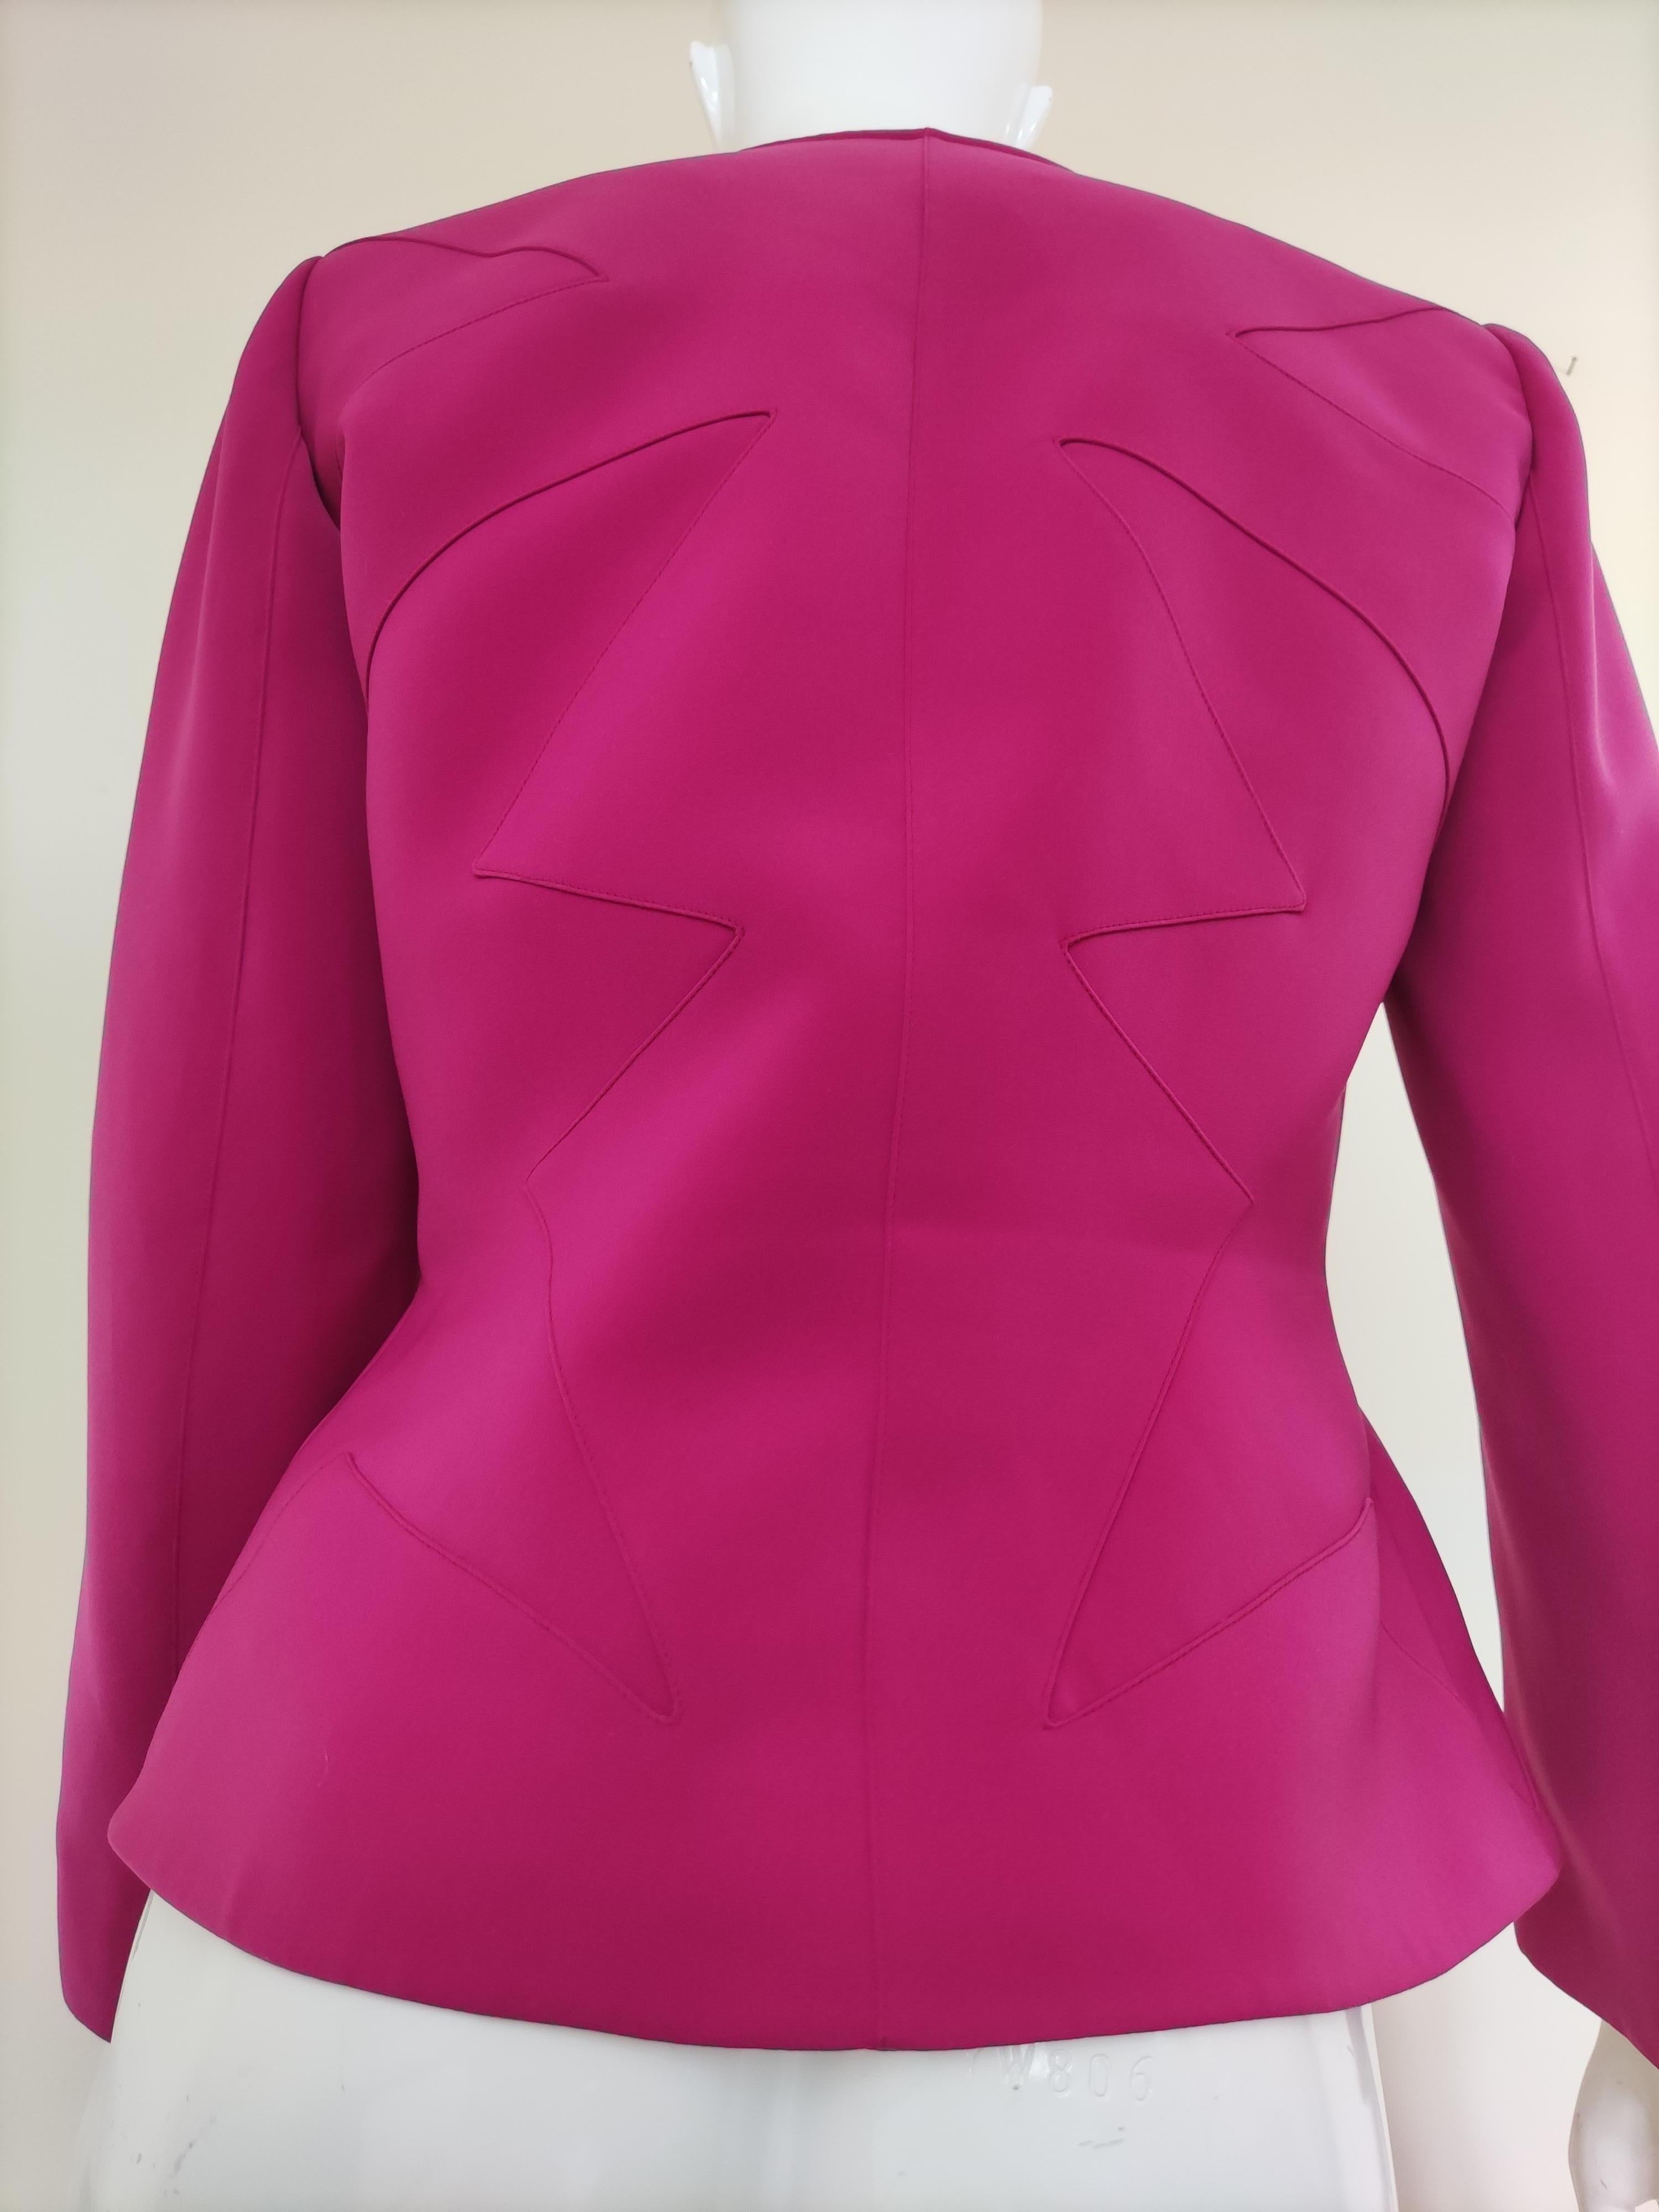 Thierry Mugler Star Runway Wasp Waist Violet Purple Pink Vintage Blazer Jacket For Sale 4